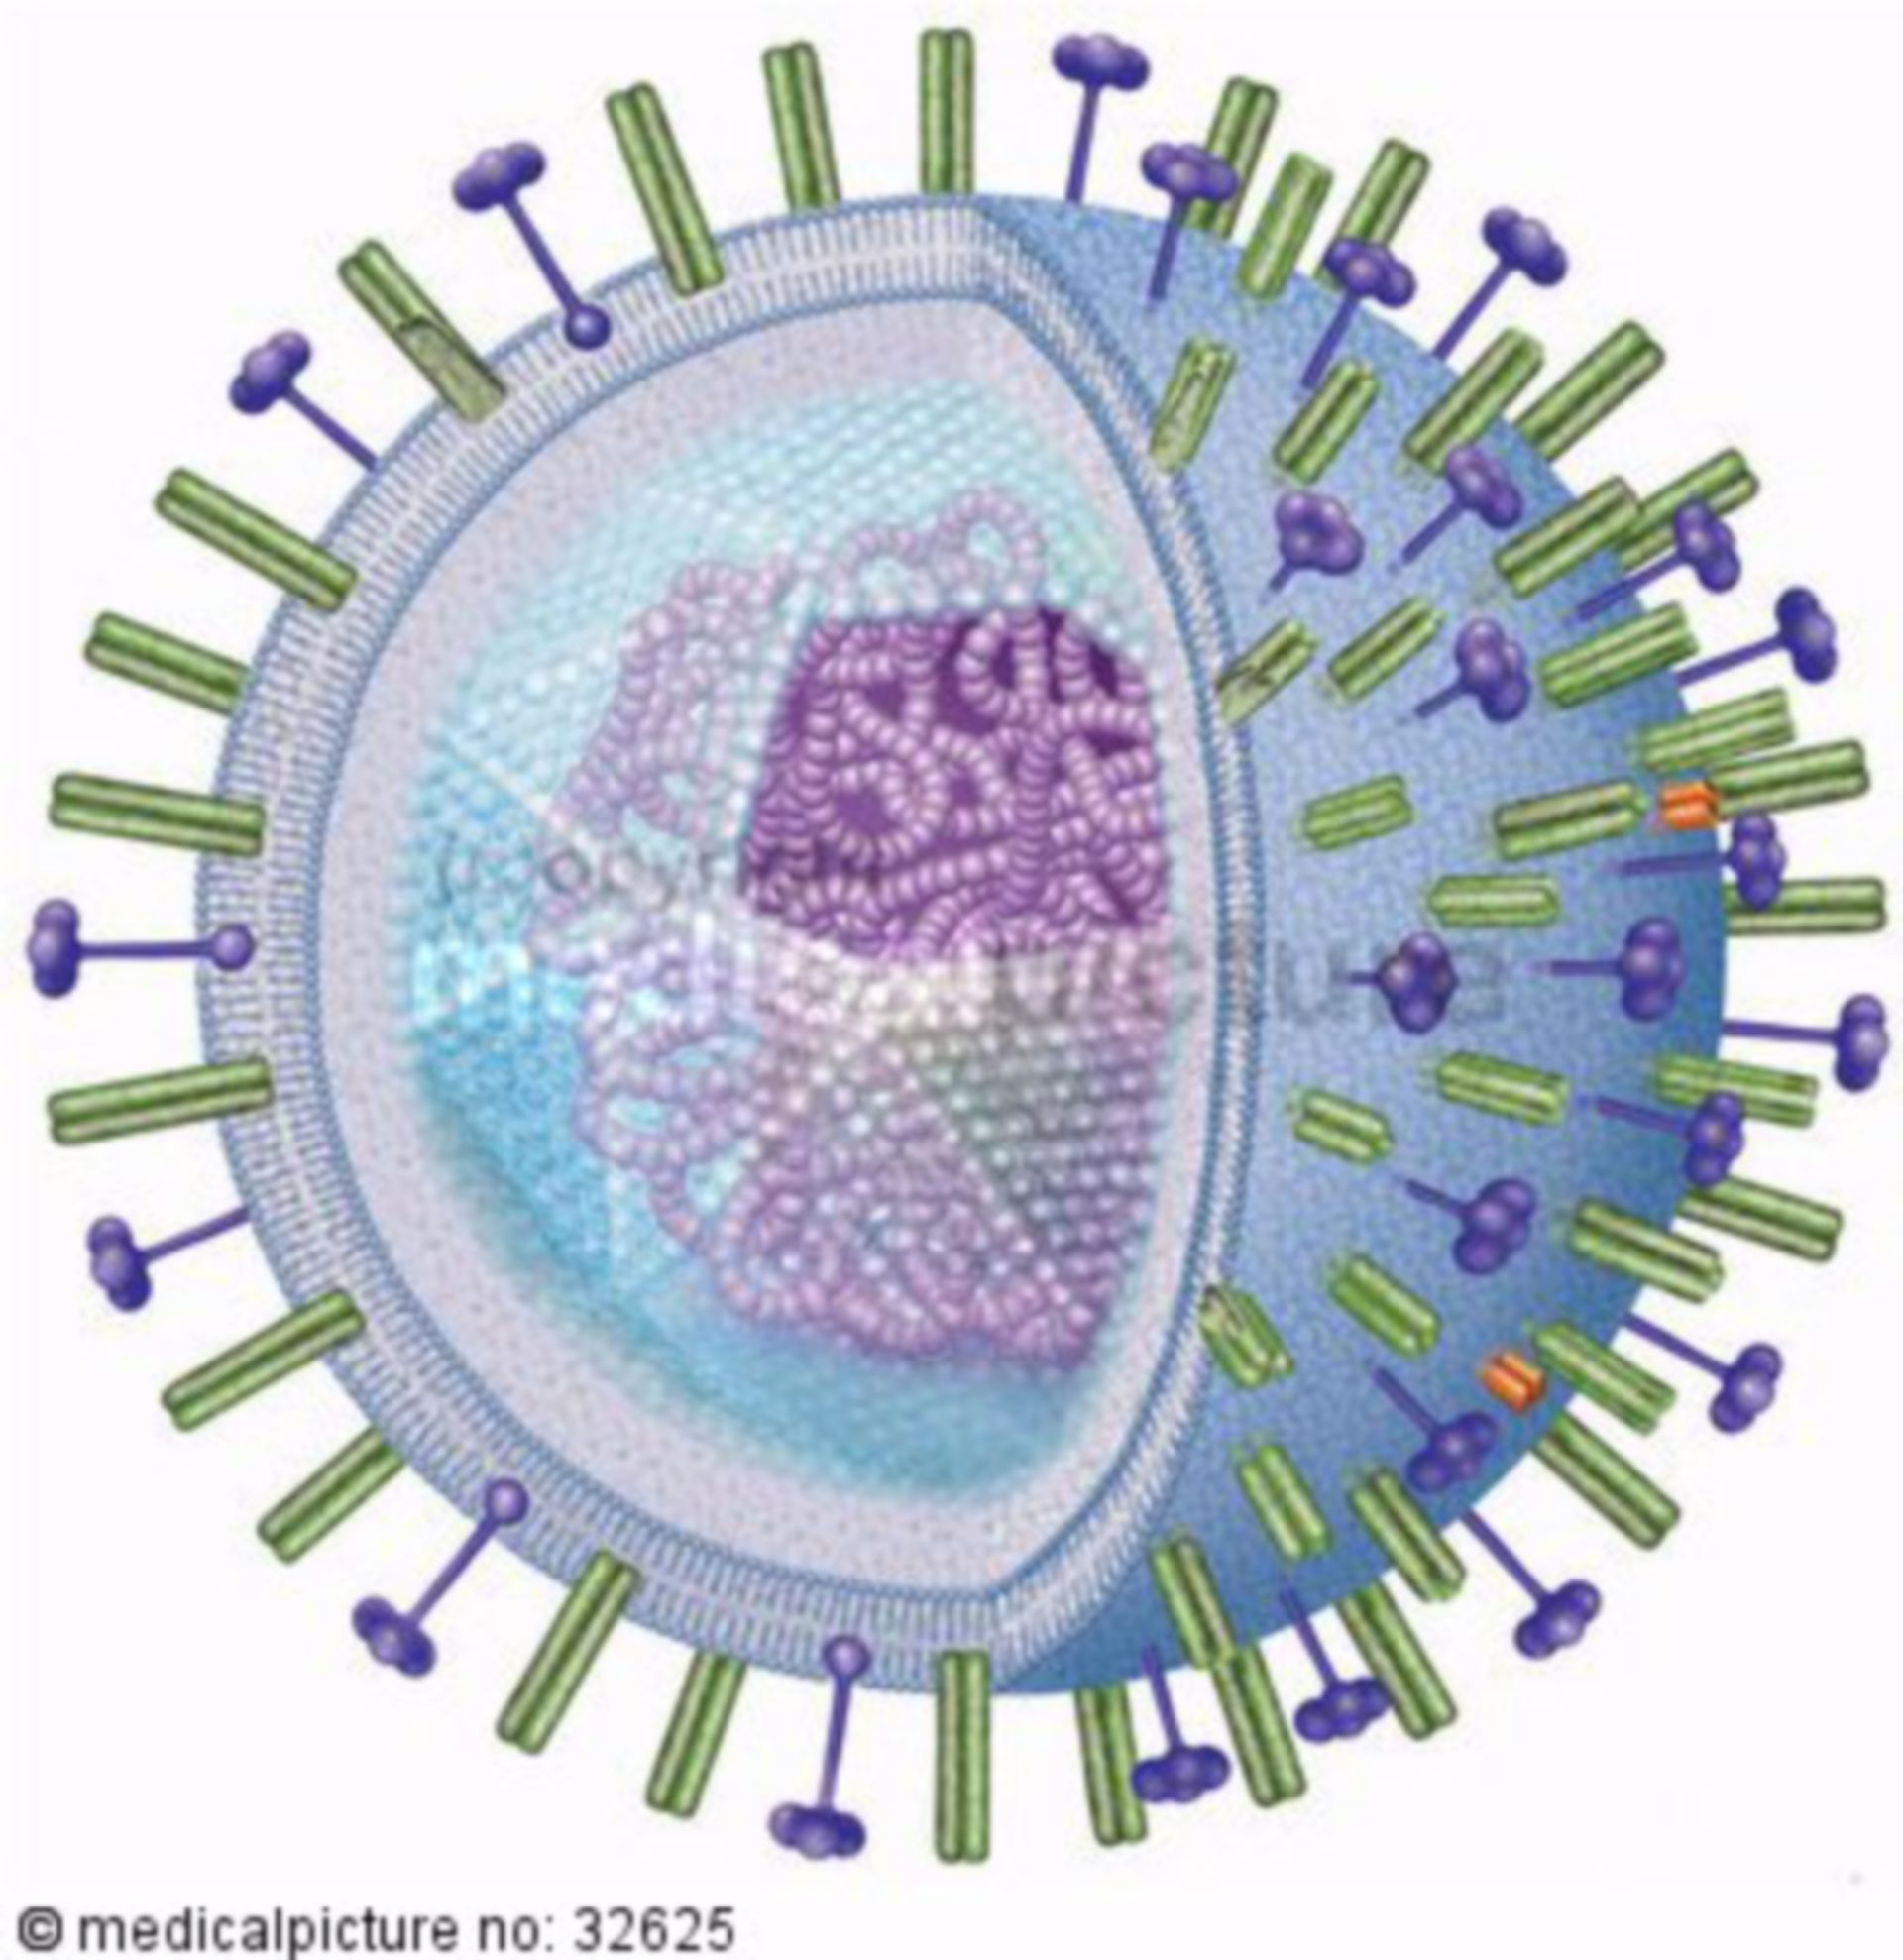  Grippevirus, cold virus 
